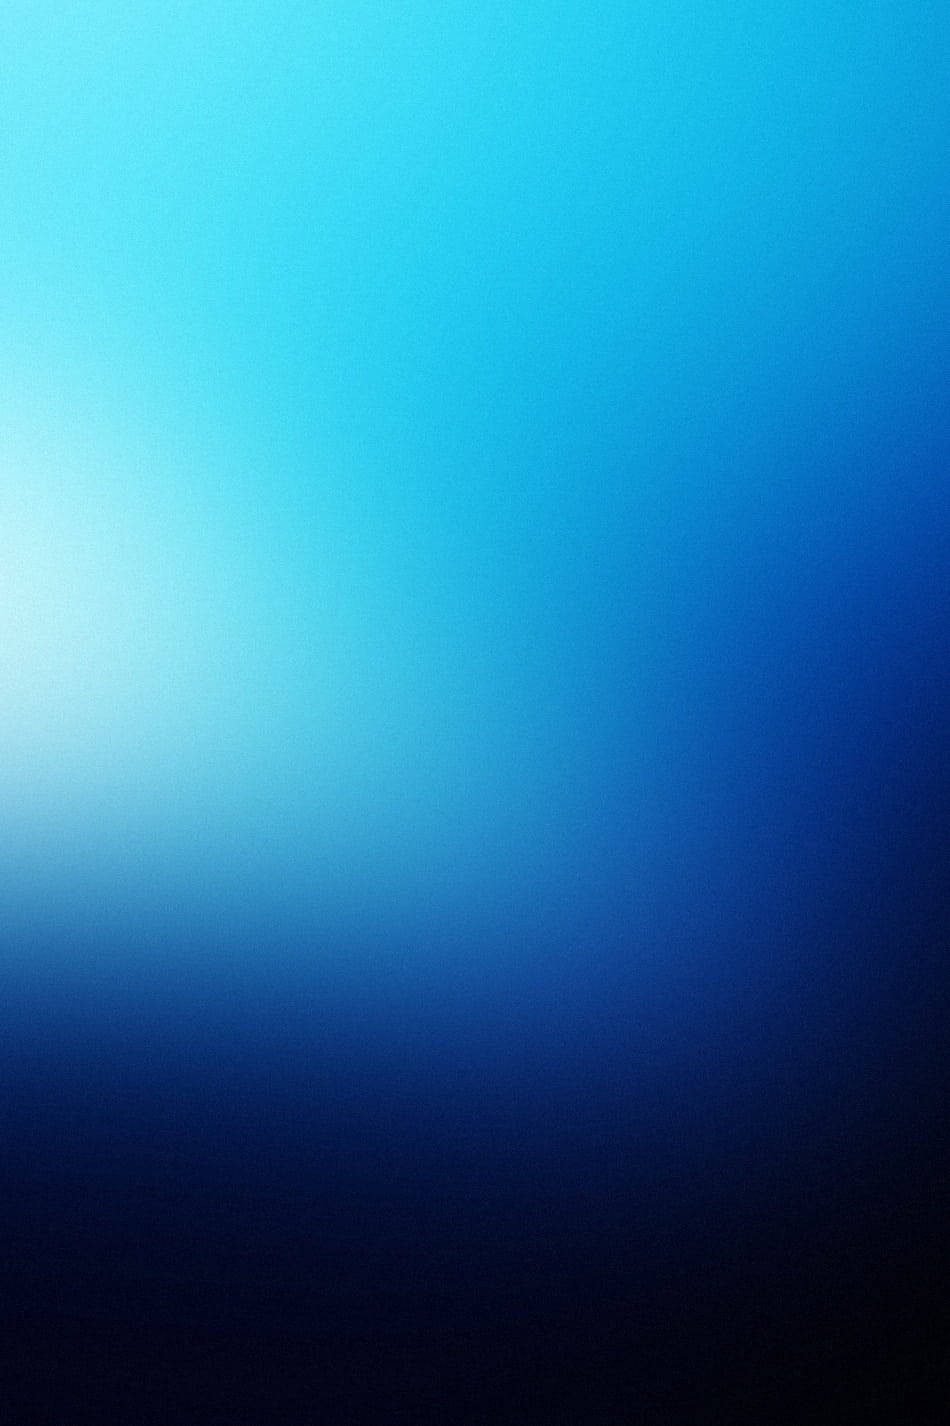 Sort og Blå iPhone 4s Tapet: Et mønster af sort og blå til iPhone 4s. Wallpaper